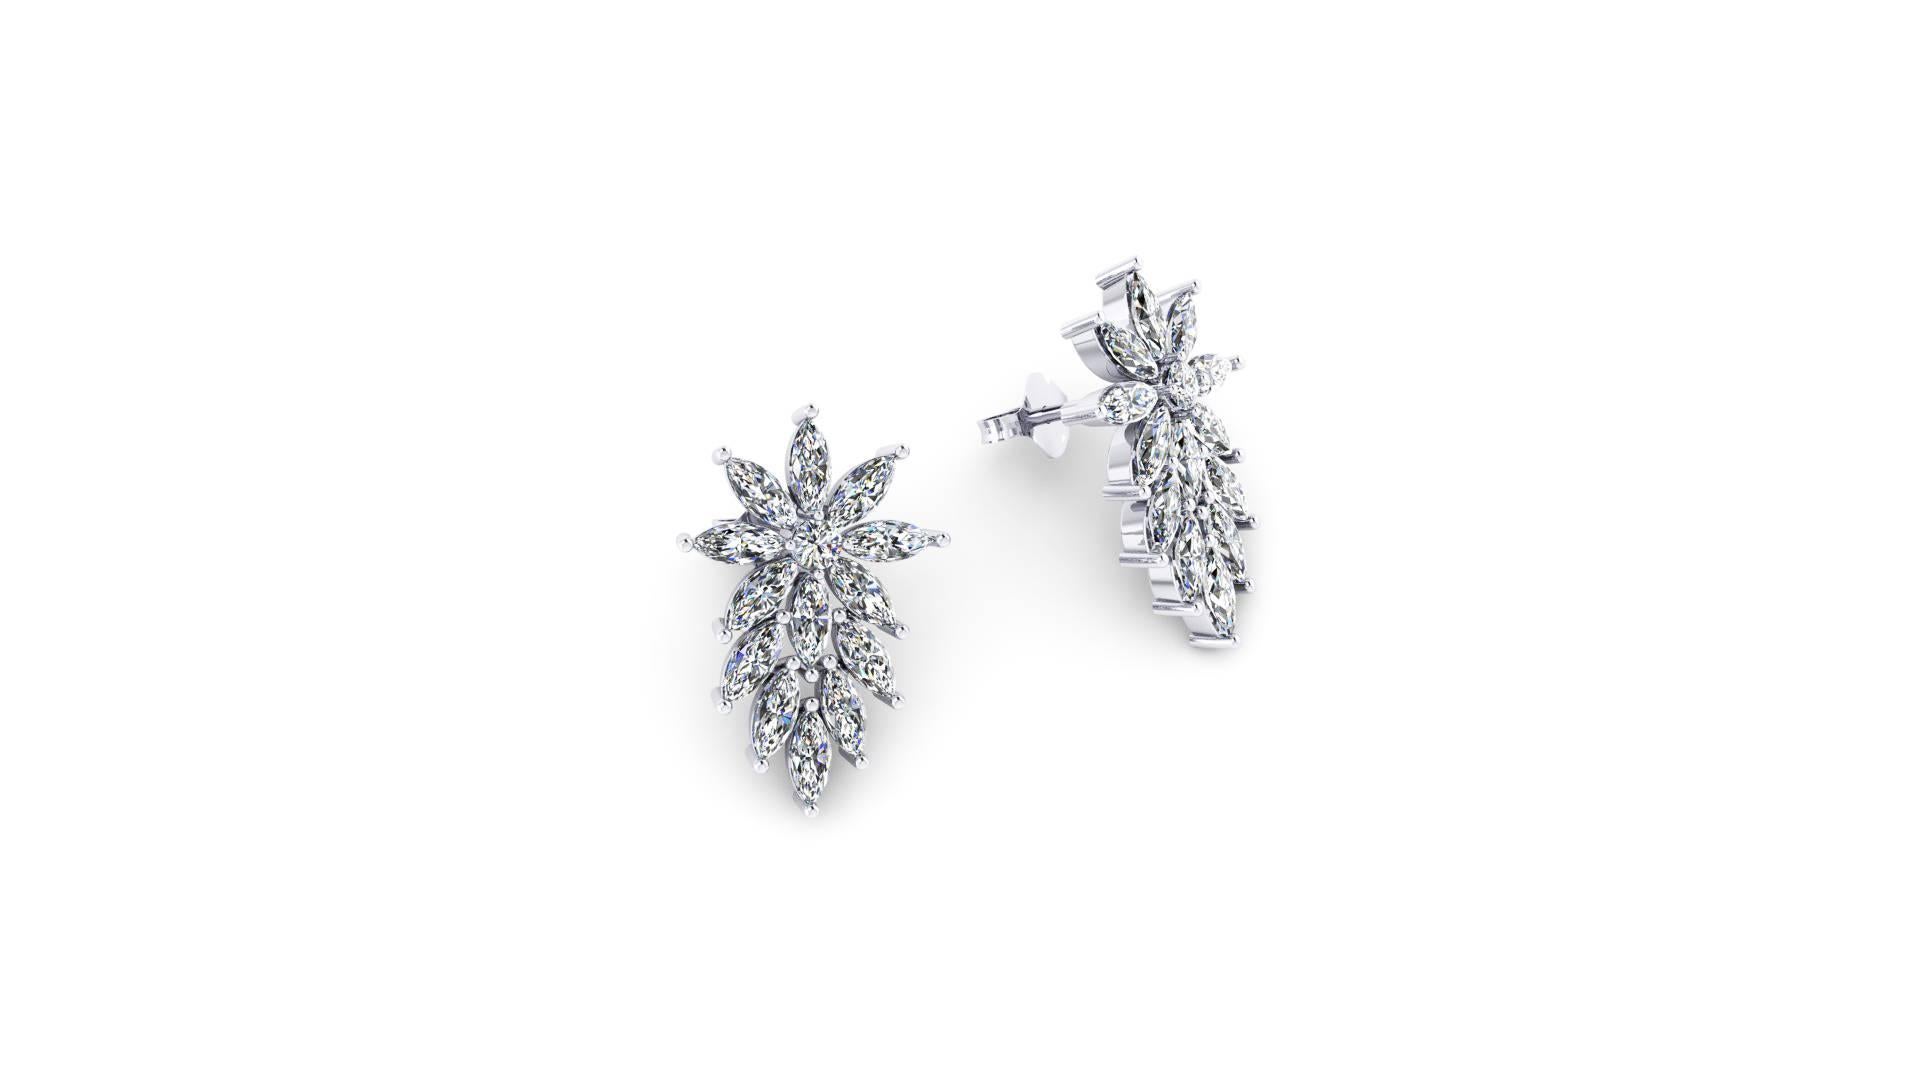 3.40 Carats Marquise Diamonds Star earrings, fait à la main en platine à New York par un maître joaillier italien, boucles d'oreilles en diamant, très étincelantes, chic et élégance pour toutes les femmes de goût, cadeau idéal. 